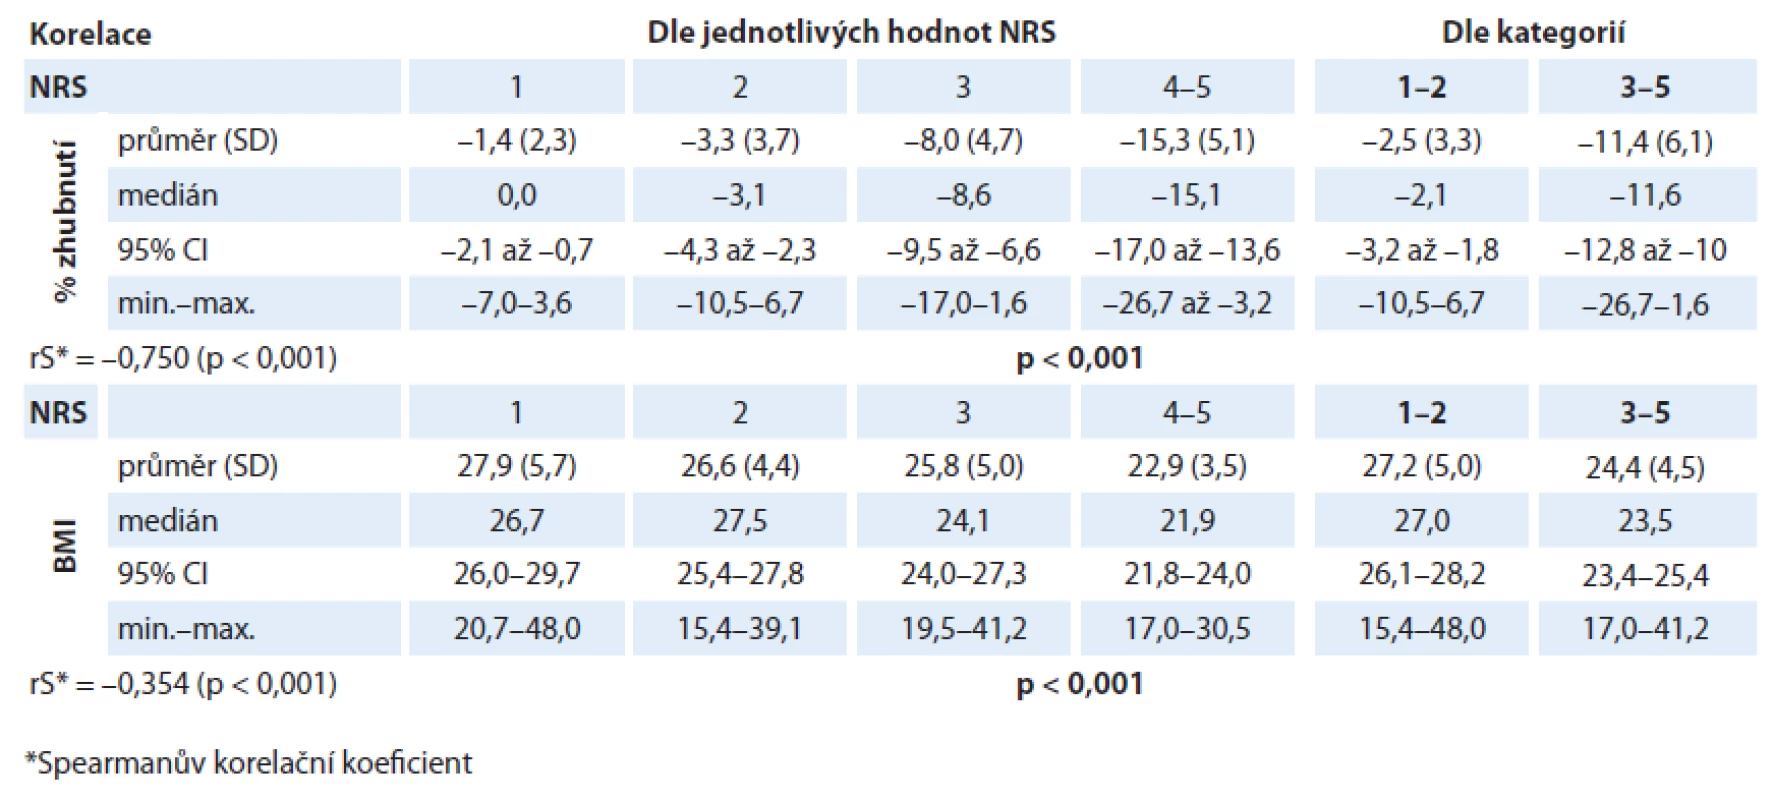 Závislost hodnoty procentuální ztráty hmotnosti/indexu tělesné hmotnosti na hodnotě skóre NRS.